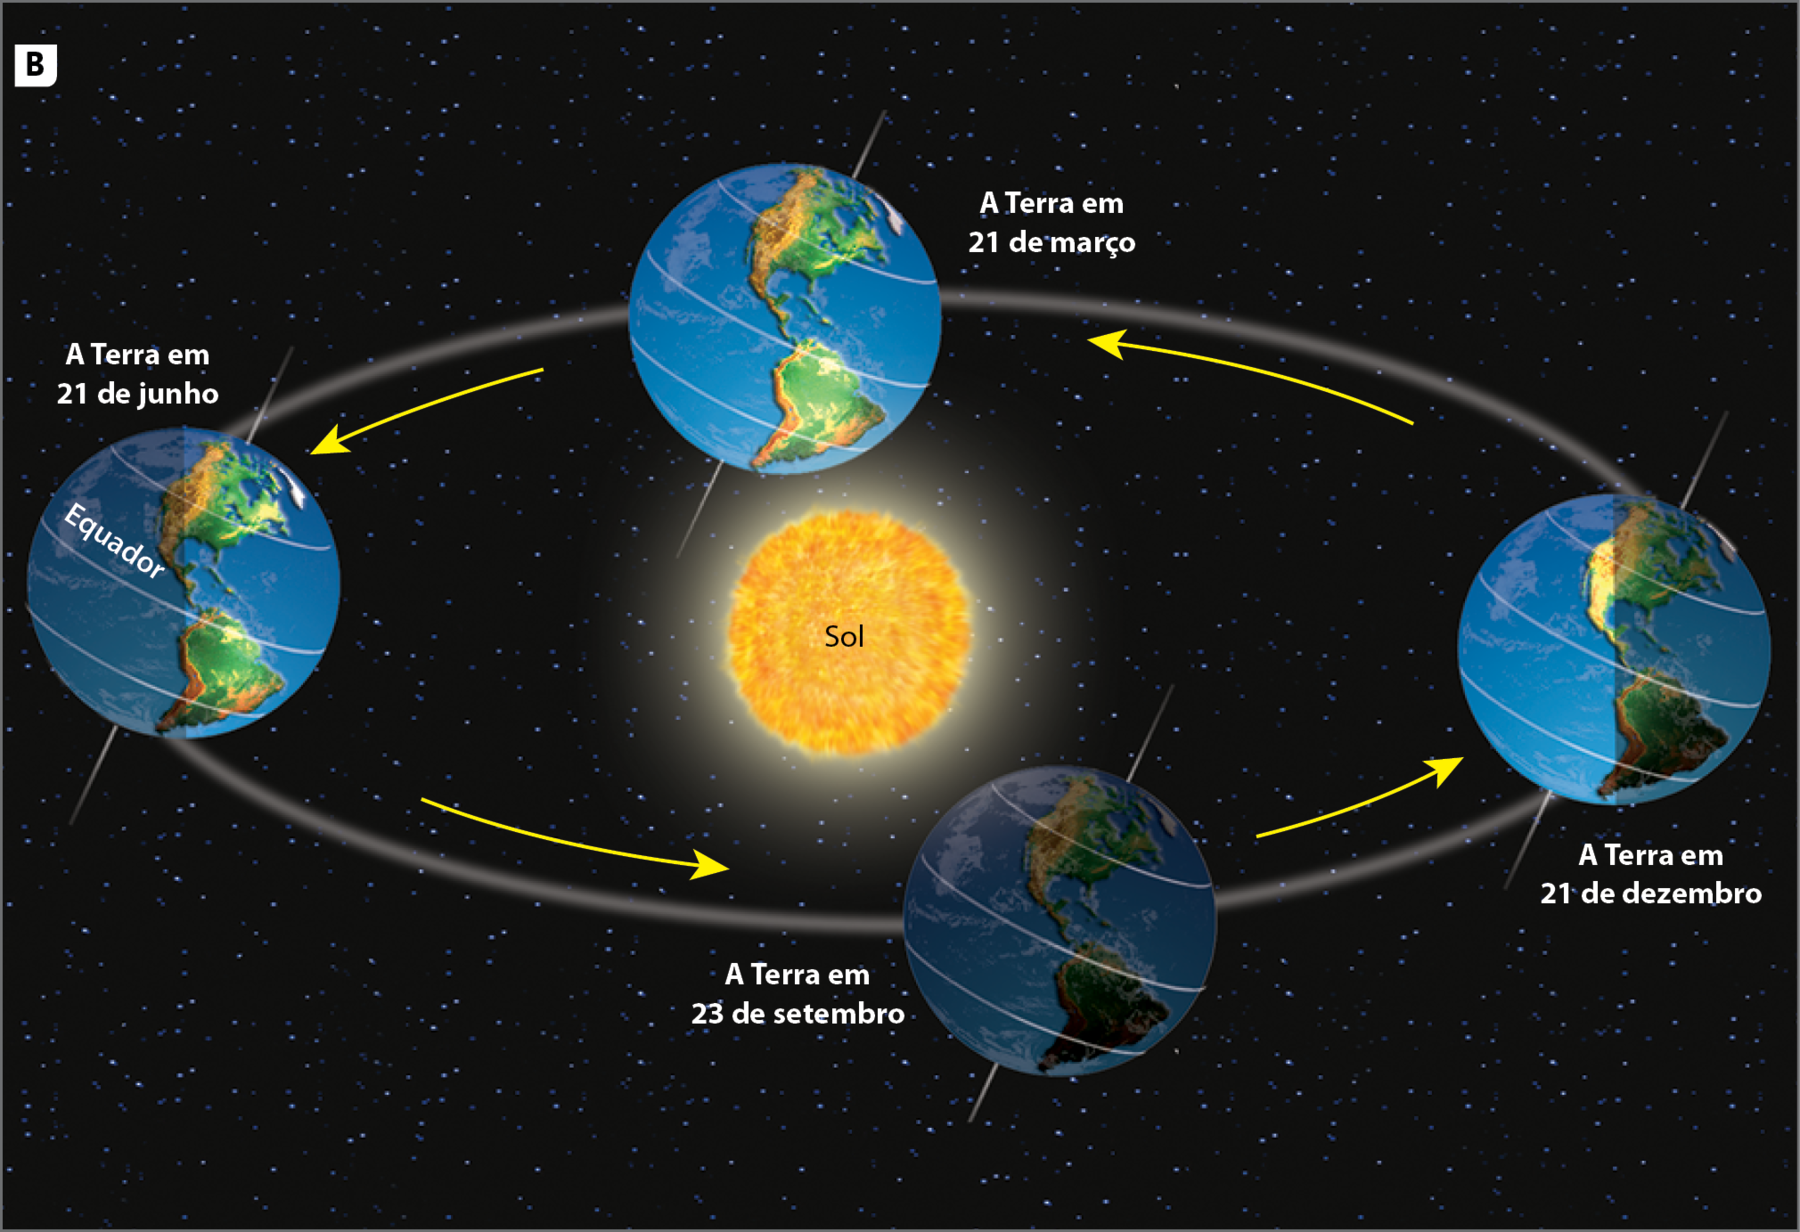 Ilustração B. A Terra e o movimento de translação em torno do Sol. Esquema ilustrado representando a órbita da Terra em torno do Sol em quatro datas diferentes. No centro, o Sol. Ao redor do Sol, uma linha em formato de elipse. Um globo terrestre traçado com paralelos e a linha do Equador, aparece em quatro posições diferentes da linha em elipse, representando quatro datas do ano. 
Globo terrestre posicionado ao lado do Sol, à esquerda, representando a data de 21 de junho. 
Globo terrestre posicionado embaixo do Sol, um pouco mais à direita, representando a data de 23 de setembro. 
Globo terrestre posicionado ao lado do Sol, à direita, representando a data de 21 de dezembro. 
Globo terrestre posicionado acima do Sol, um pouco mais à esquerda, representando a data de 21 de março. Setas amarelas indicam a passagem de uma posição a outra.